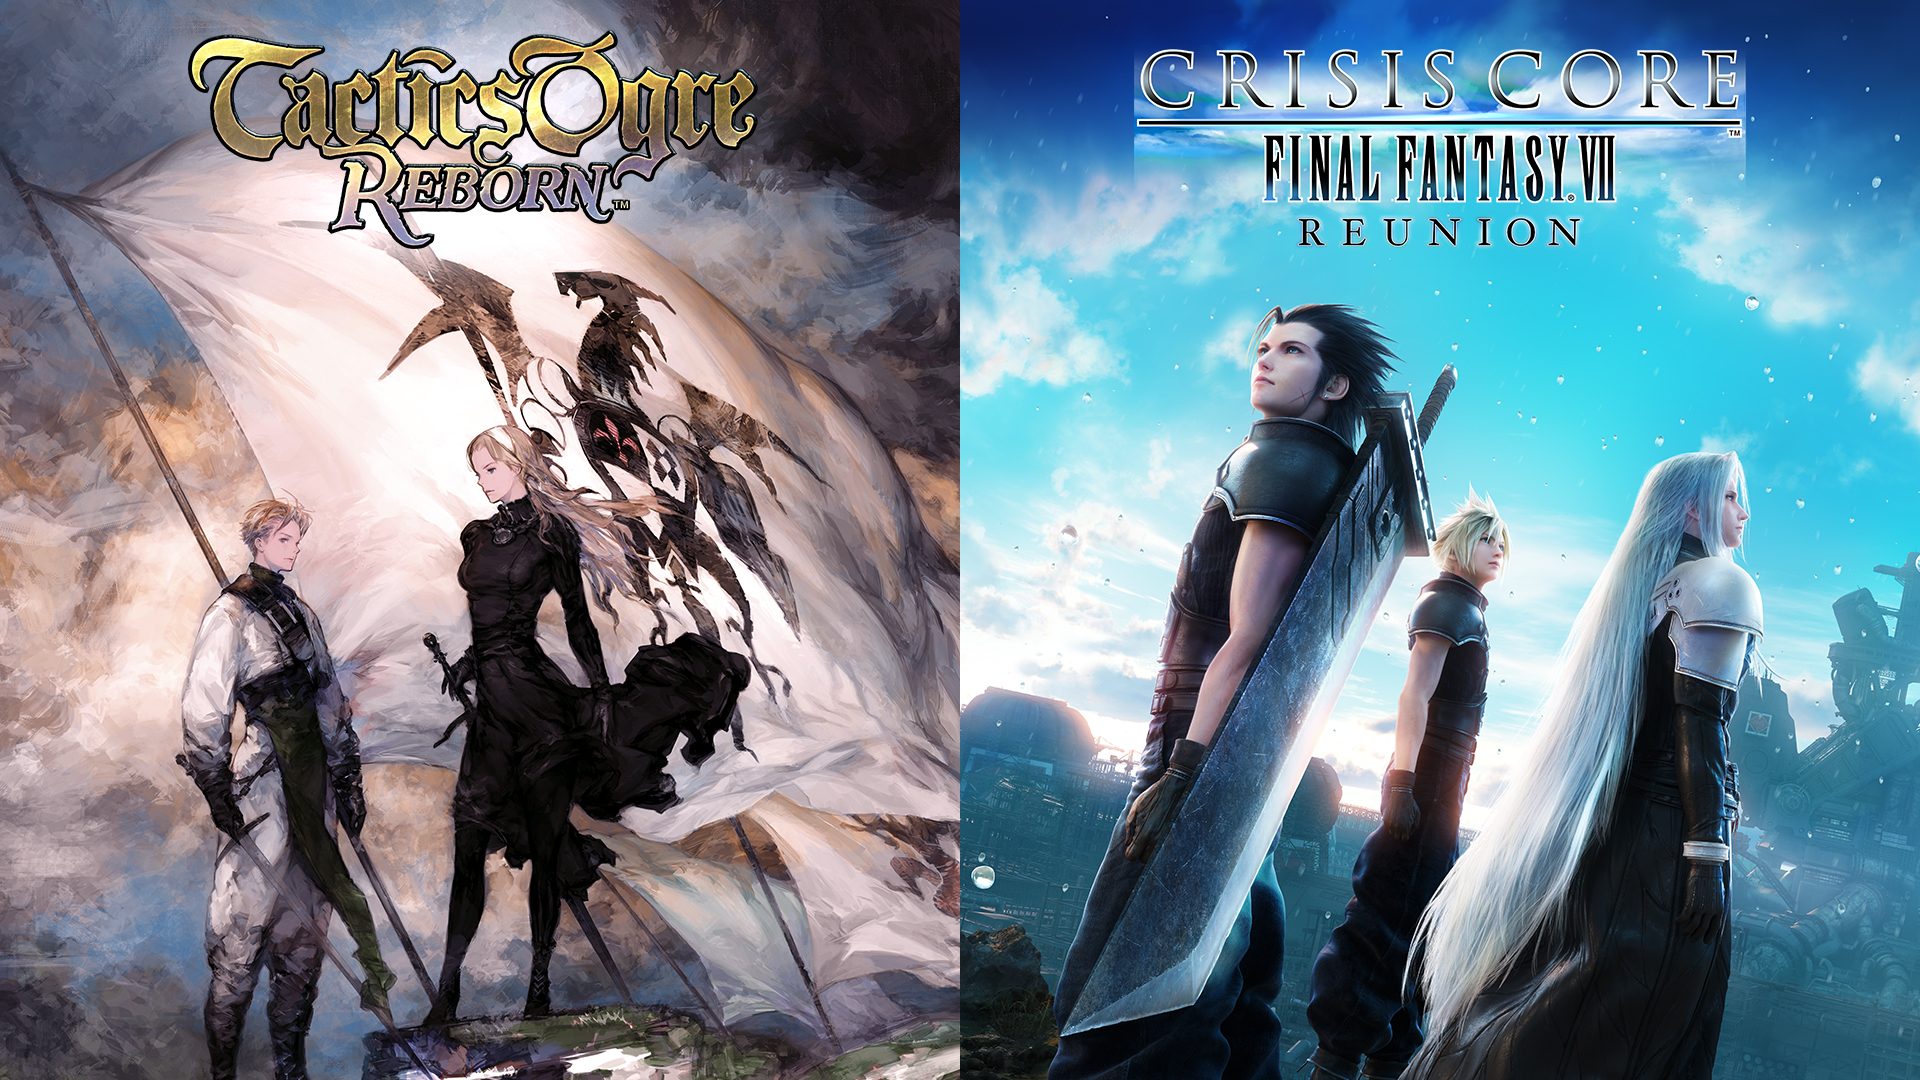 RSU Game: Protagonistas de Final Fantasy